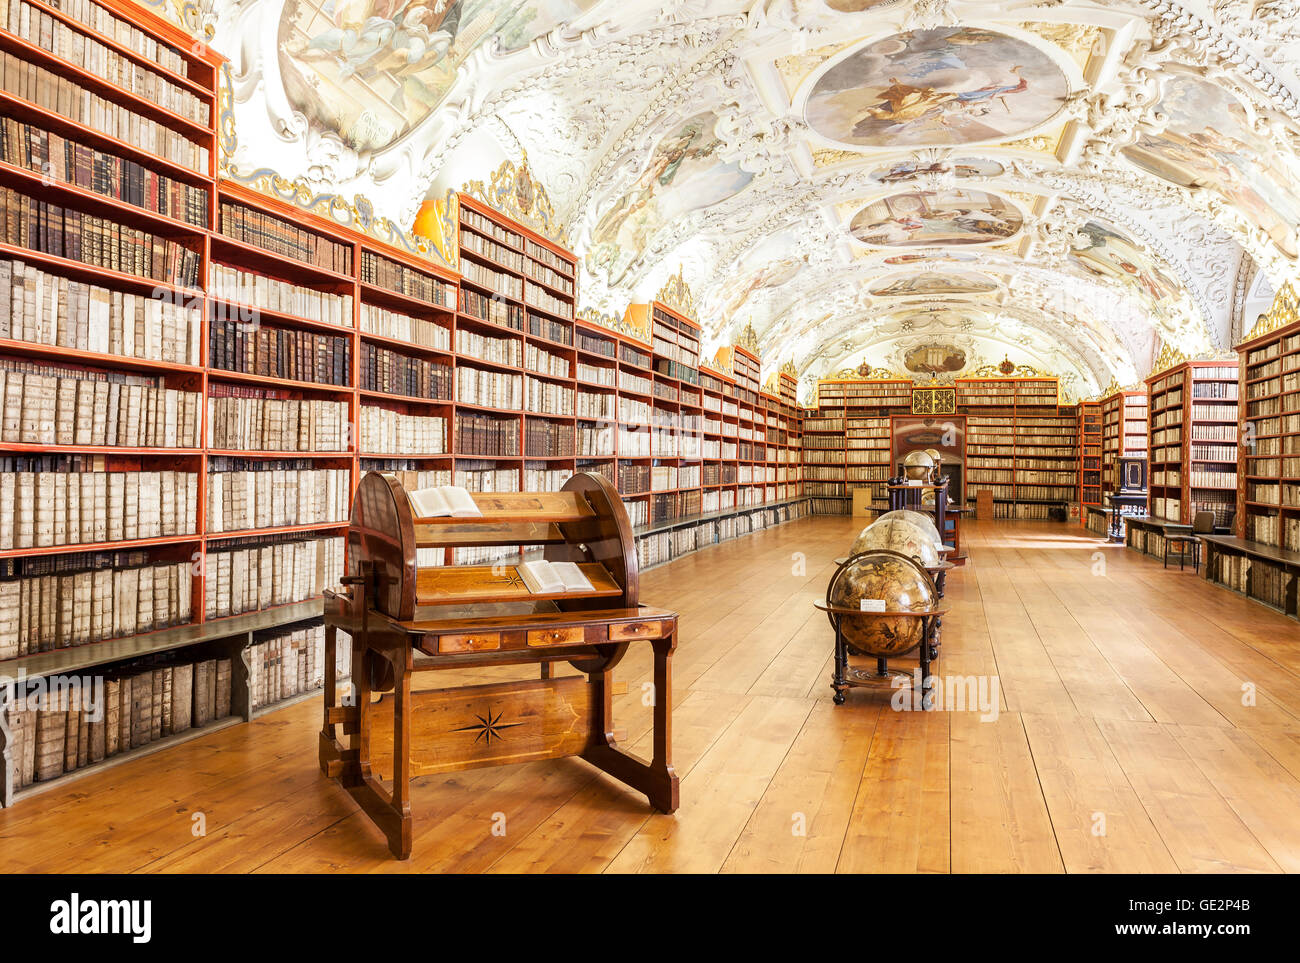 Prag, Tschechien - 15. Juni 2014: die theologische Hall in Strahov Kloster in Prag, einer der schönsten Bibliothek Innenräume Stockfoto